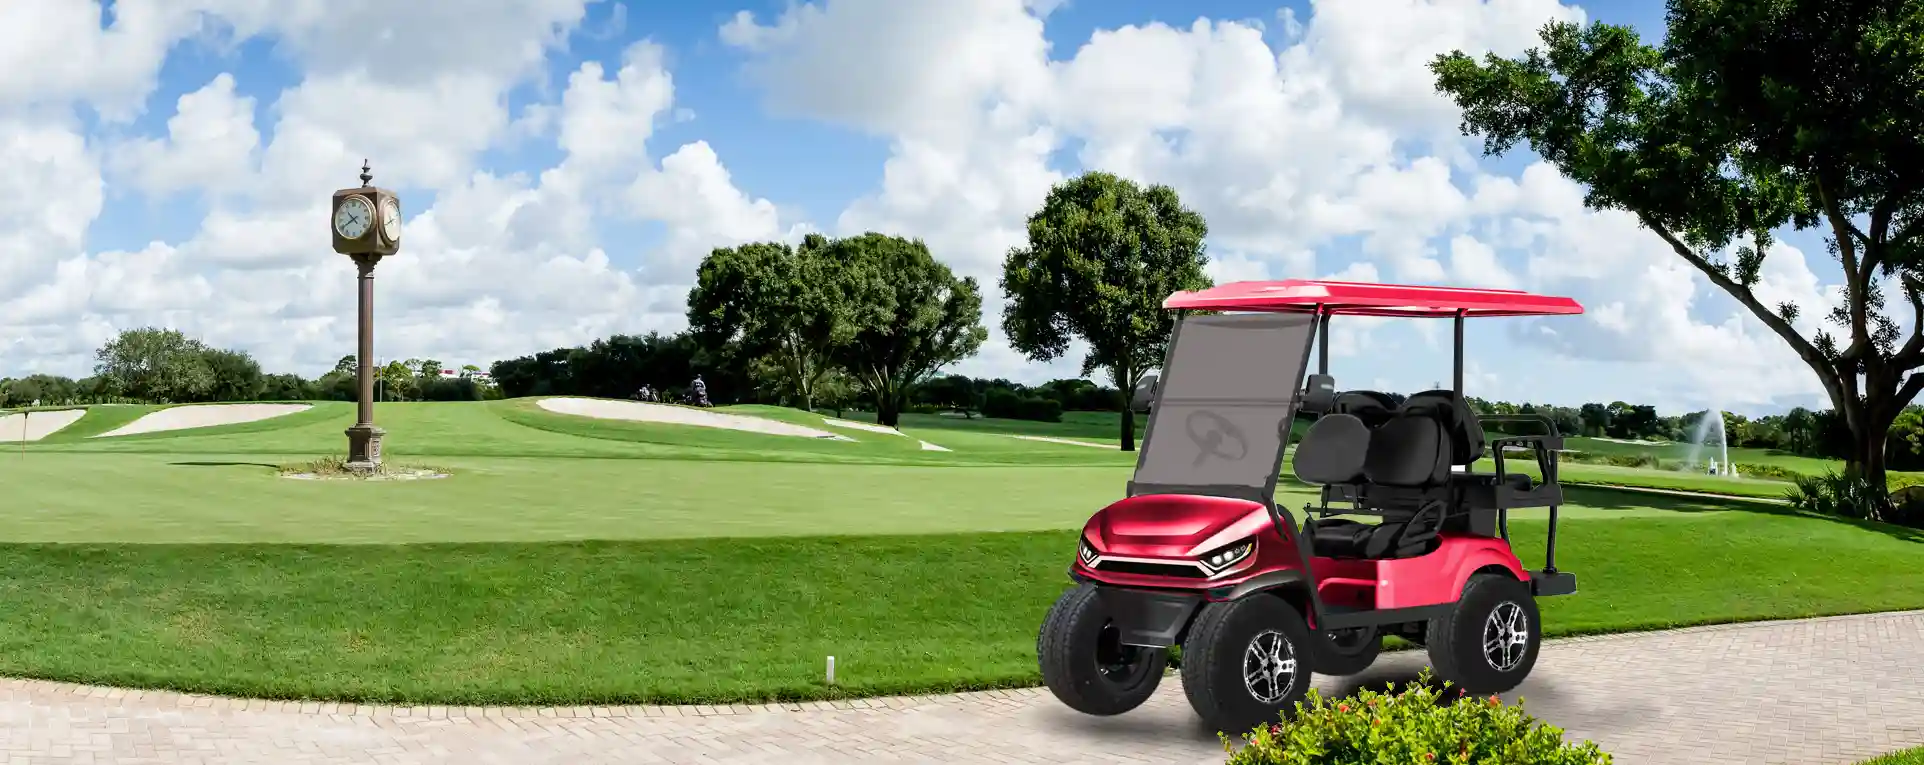 Meet Our ETONG Golf Cart